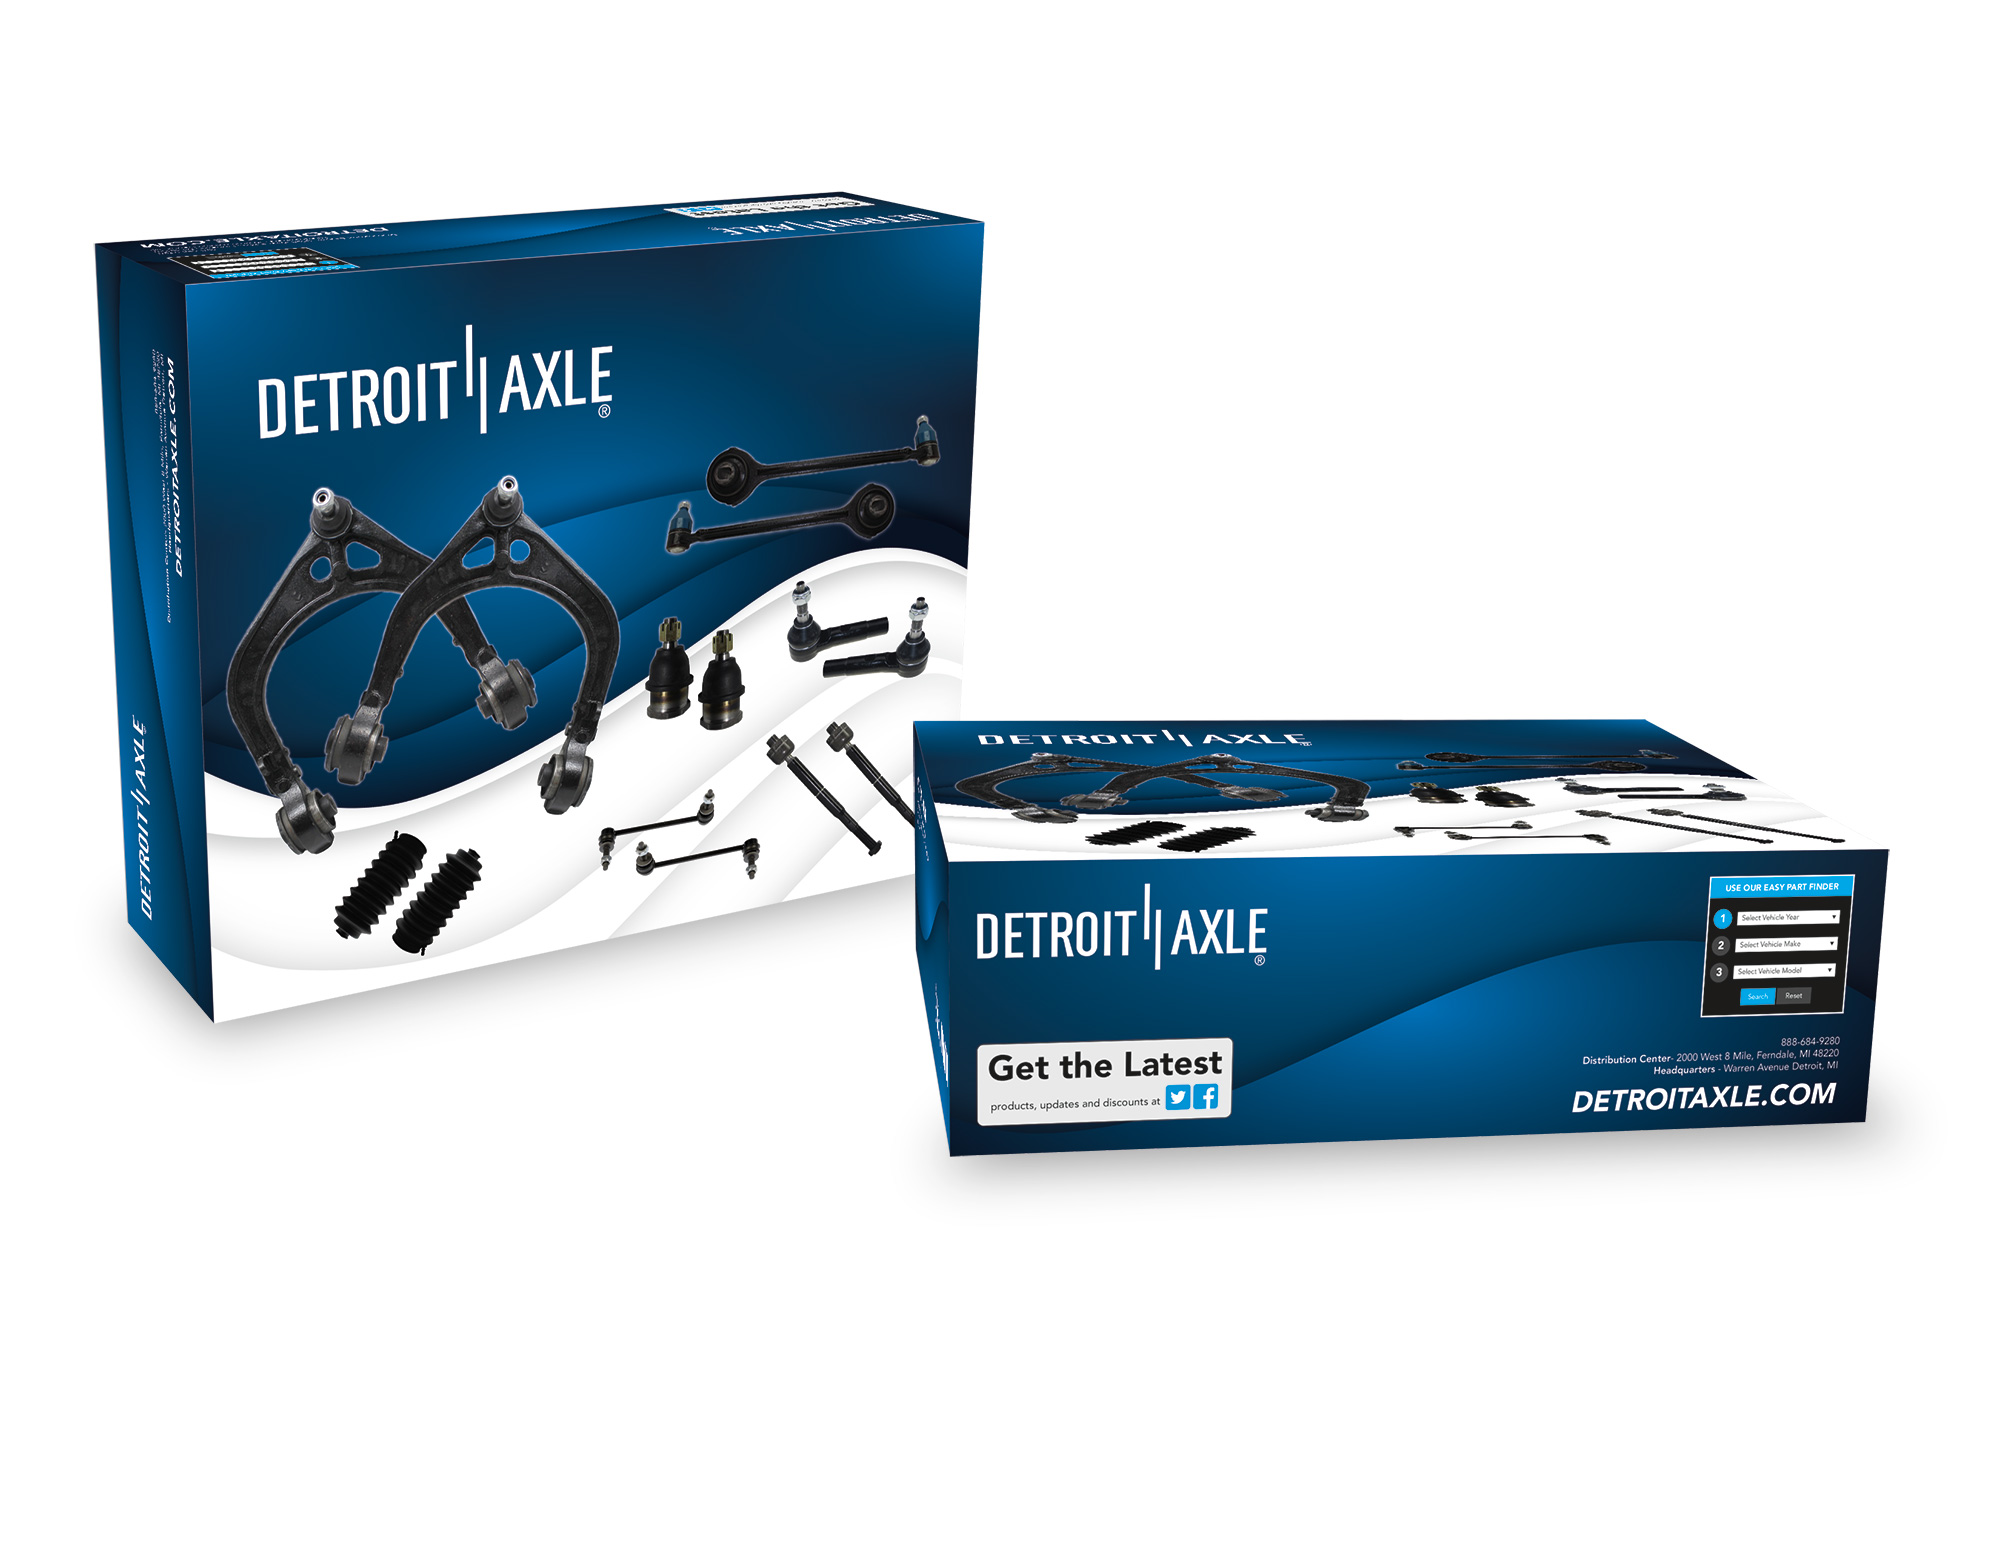 Detroit Axle Packaging Tim Dolecek